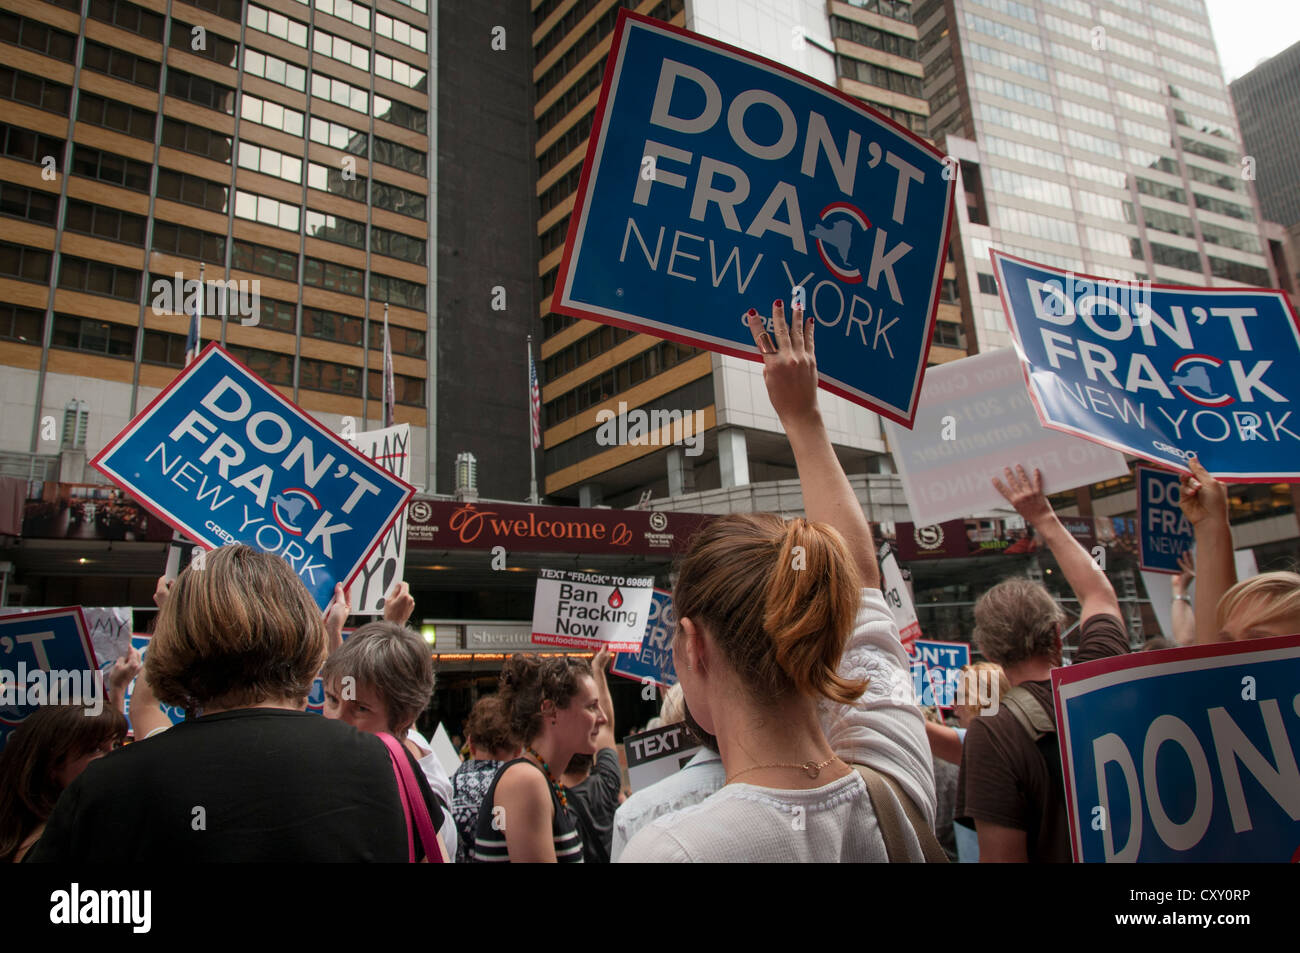 Une manifestation de protestation contre la fracturation hydraulique Manhattan pour le gaz naturel à New York en dehors de NY gouverneur Cuomo's hotel. Banque D'Images